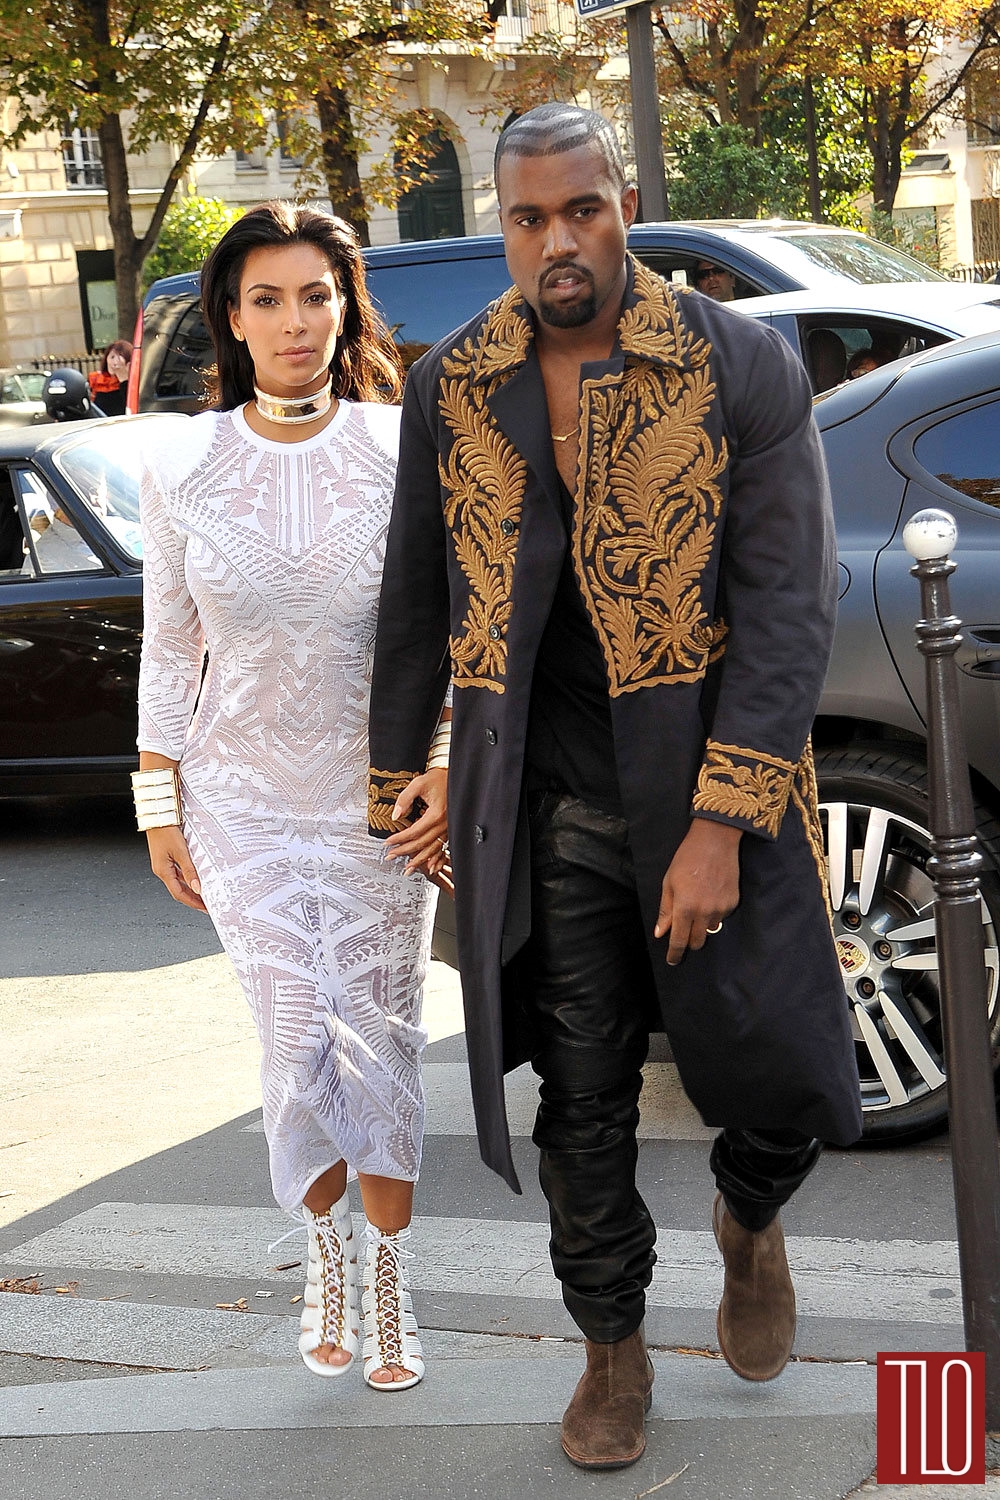 Kim-Kardashian-Kanye-West-Paris-Fashion-Week-Lanvin-Balmain-Tom-Lorenzo-Site-TLO (1)